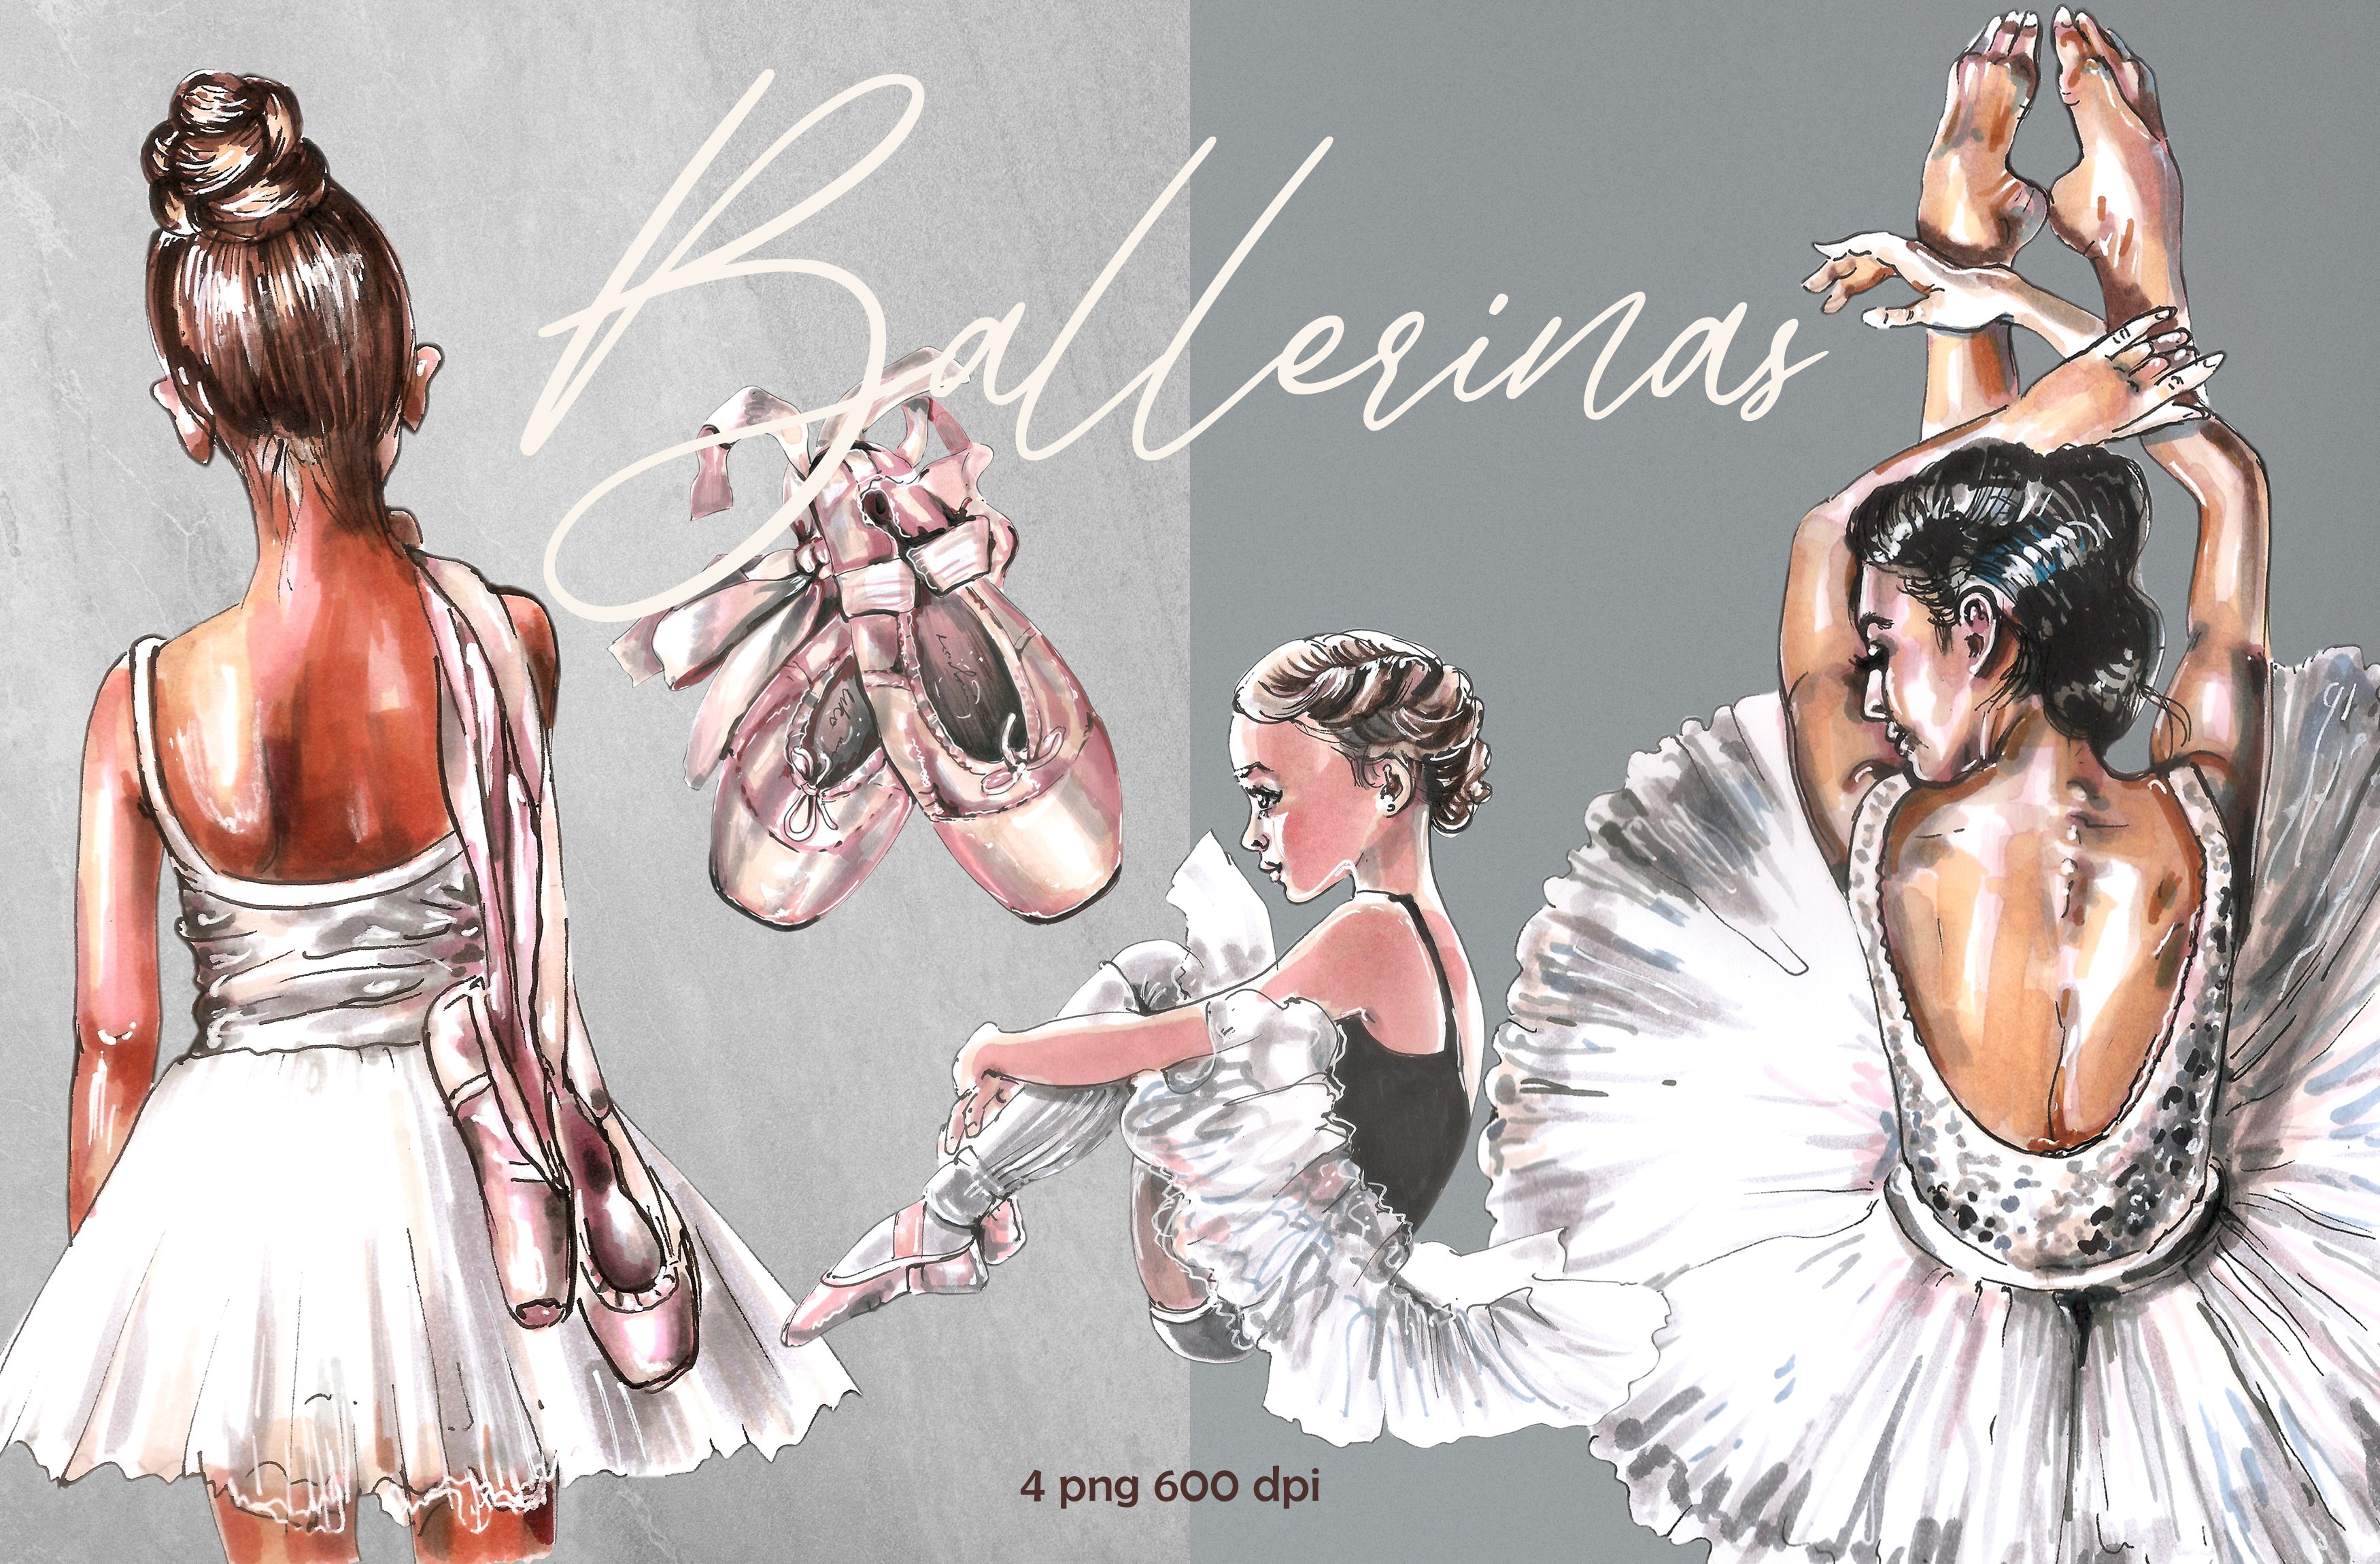 Ballerinas, ballet, ballerina cover image.